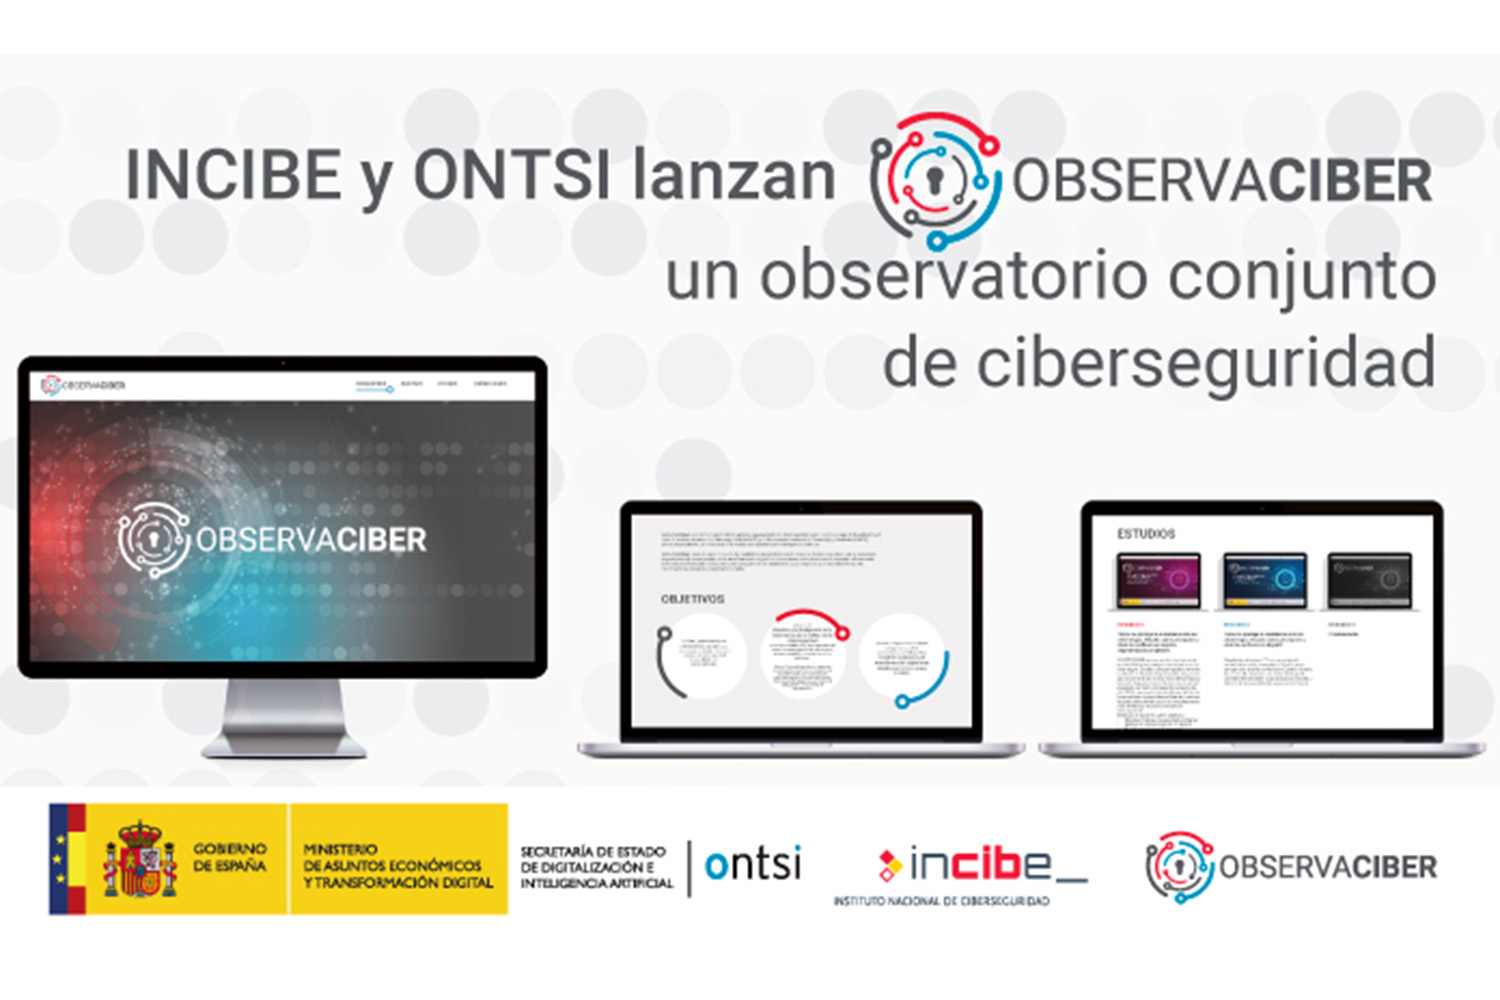 ObservaCiber_ciberseguridad Incibe ONTSI